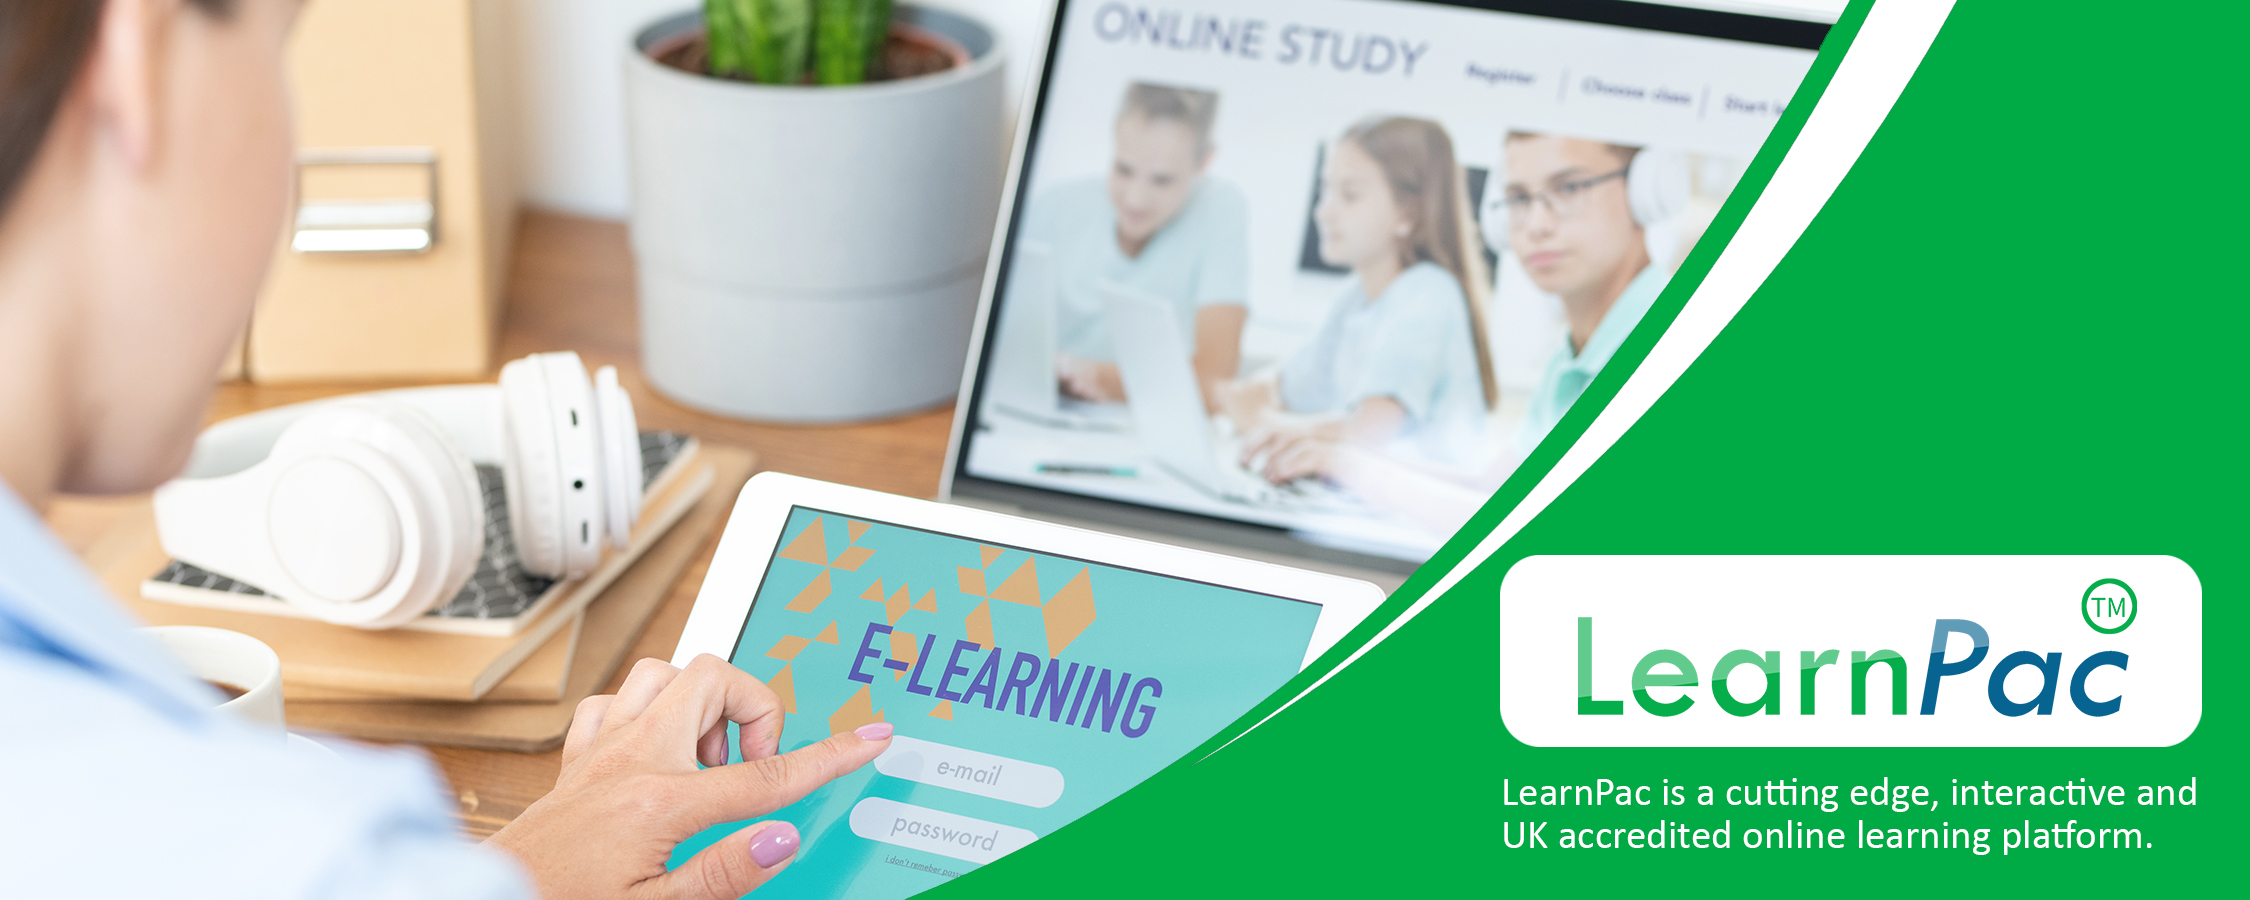 Medicines Management for Nurses & AHPs - Online Learning Courses - E-Learning Courses - LearnPac Systems UK -